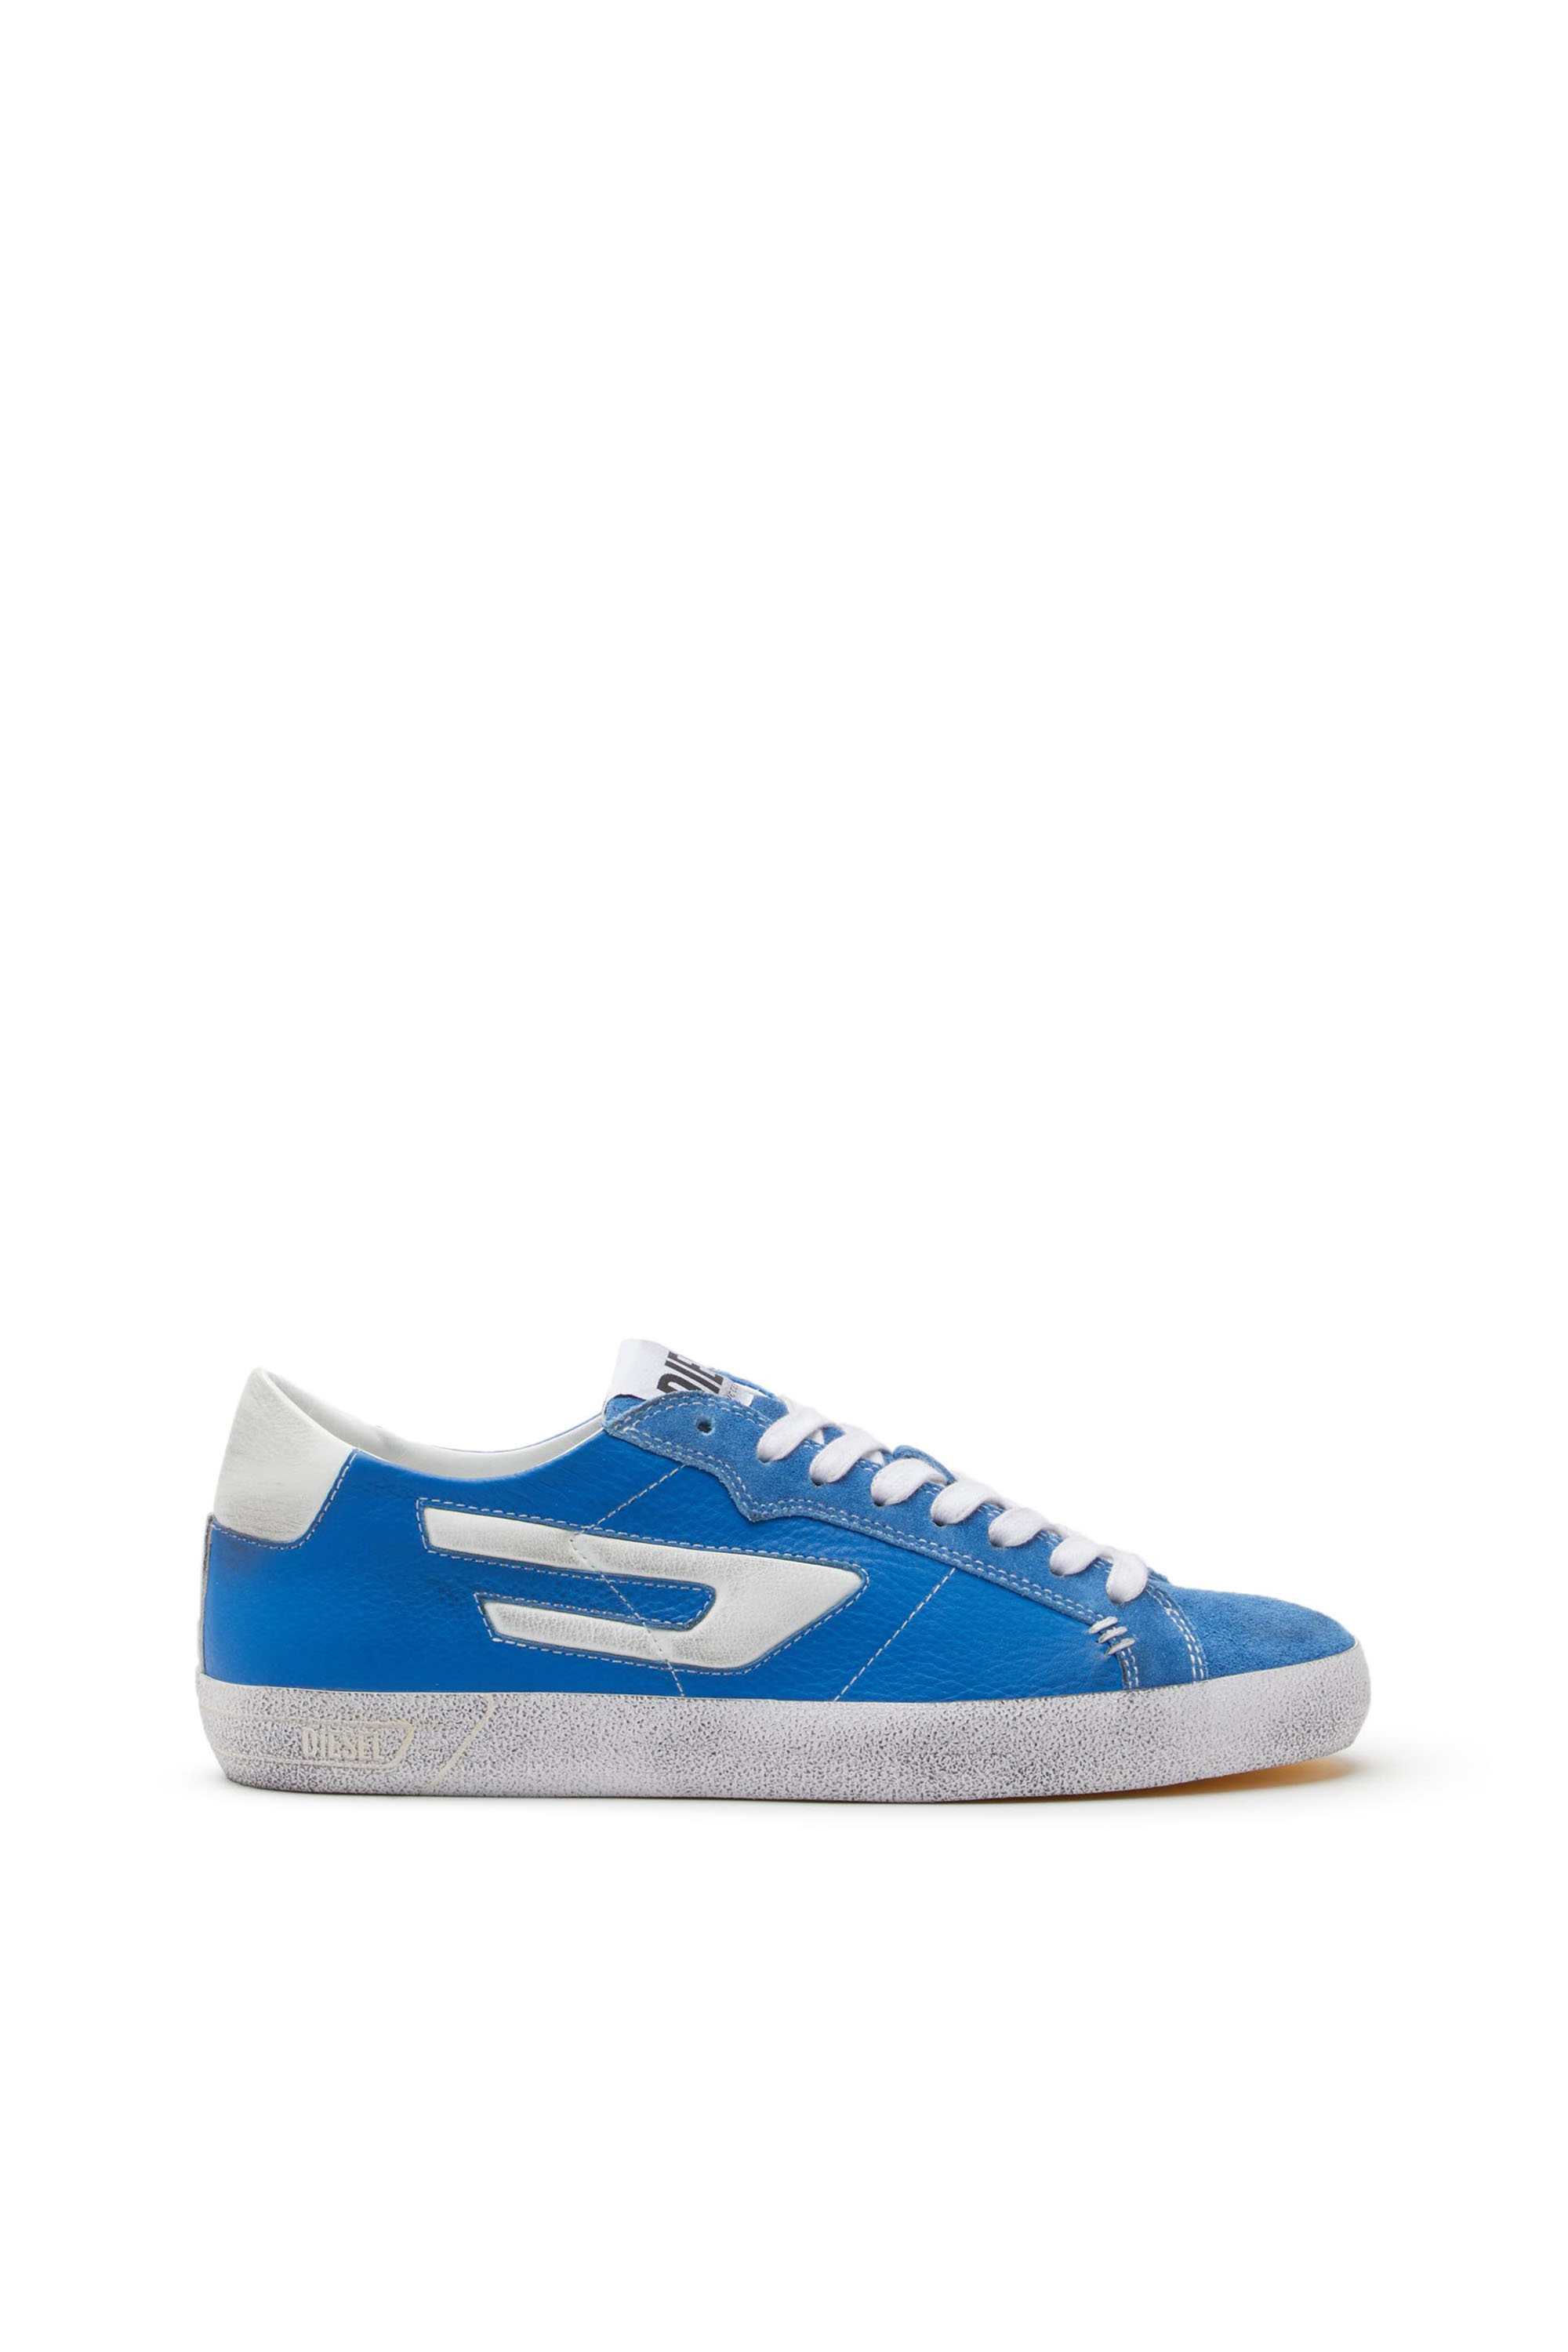 Diesel - Sneaker basse in pelle con logo D - Sneakers - Uomo - Blu